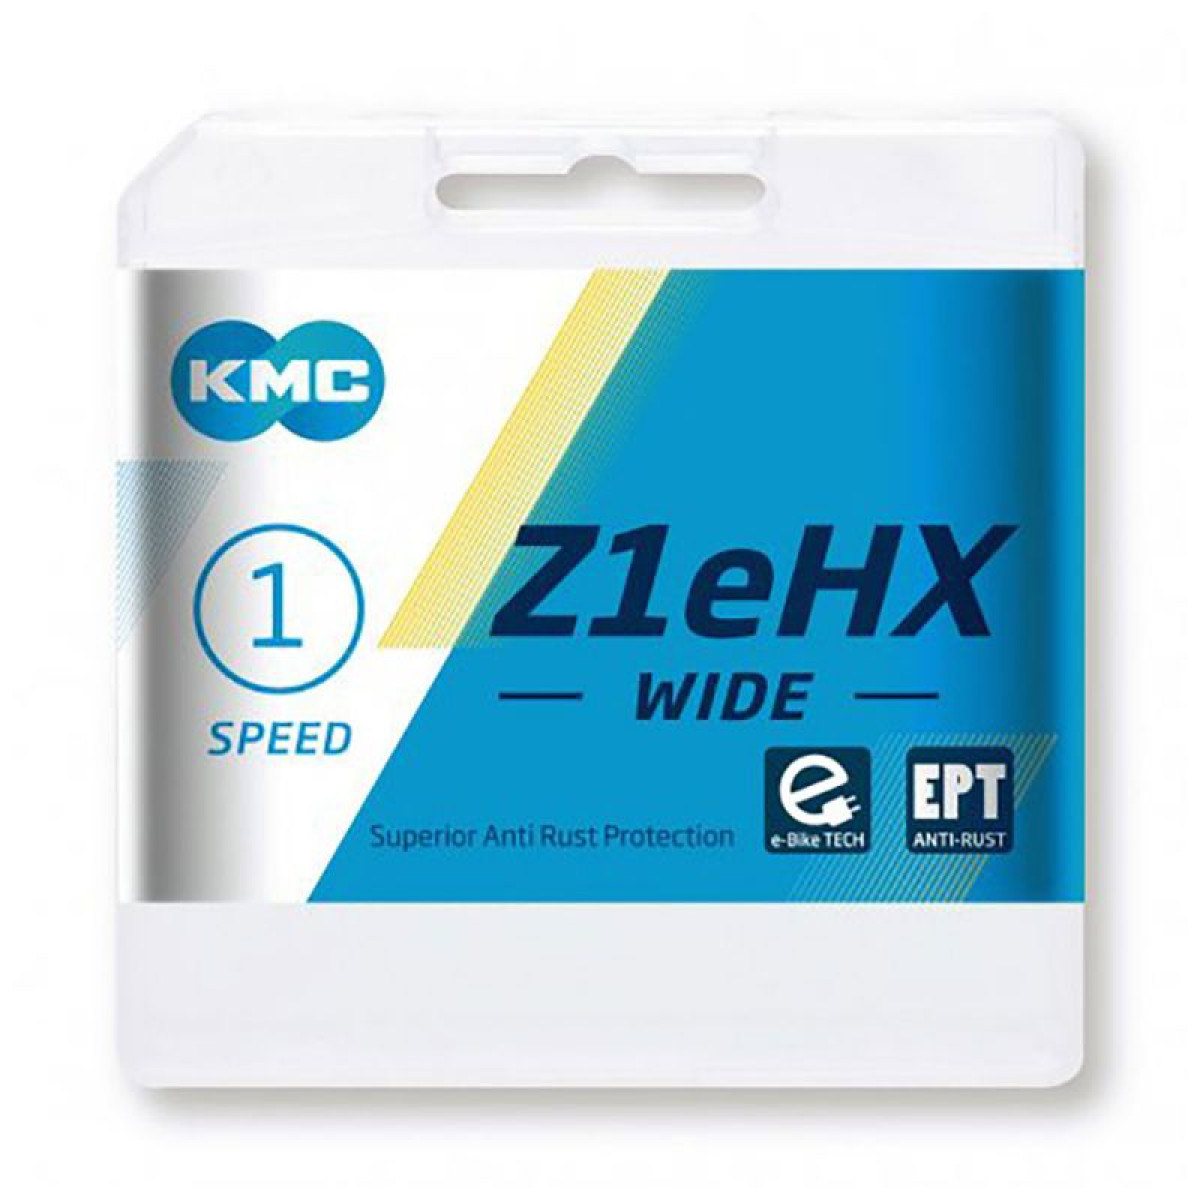 KMC Z1eHX Wide EPT grandinė / 1 pavaros / Silver